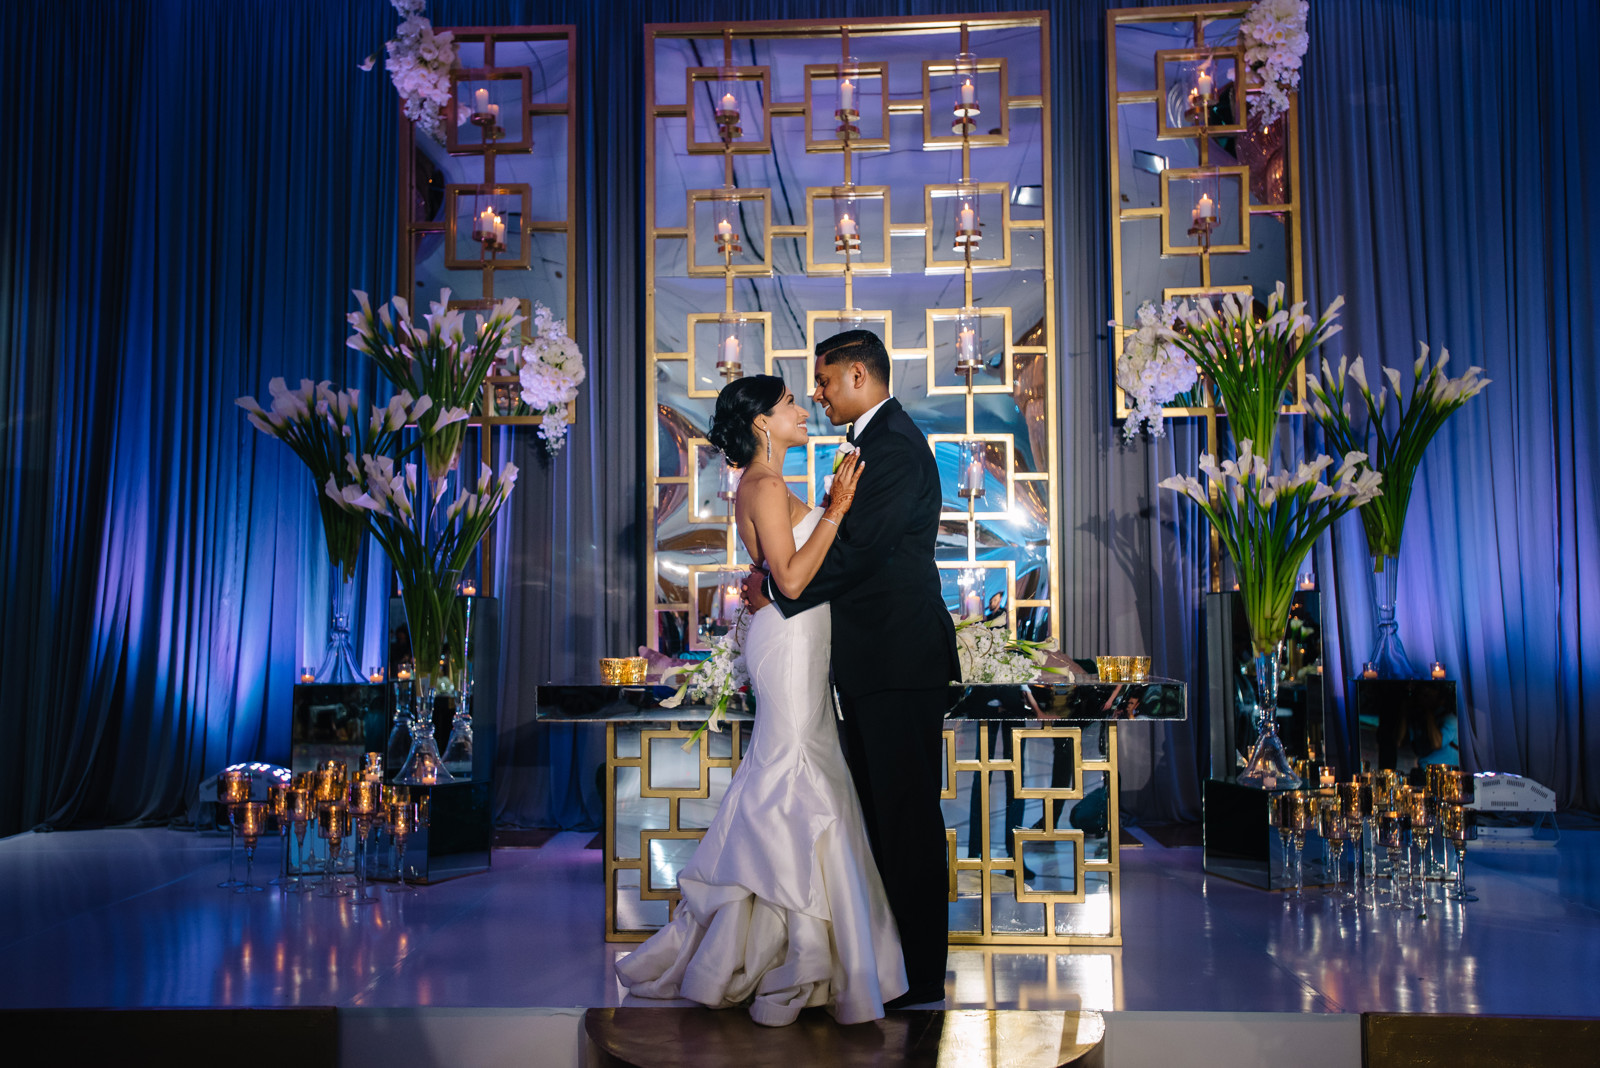 Westin Galleria Houston Wedding Reception Photos (15)